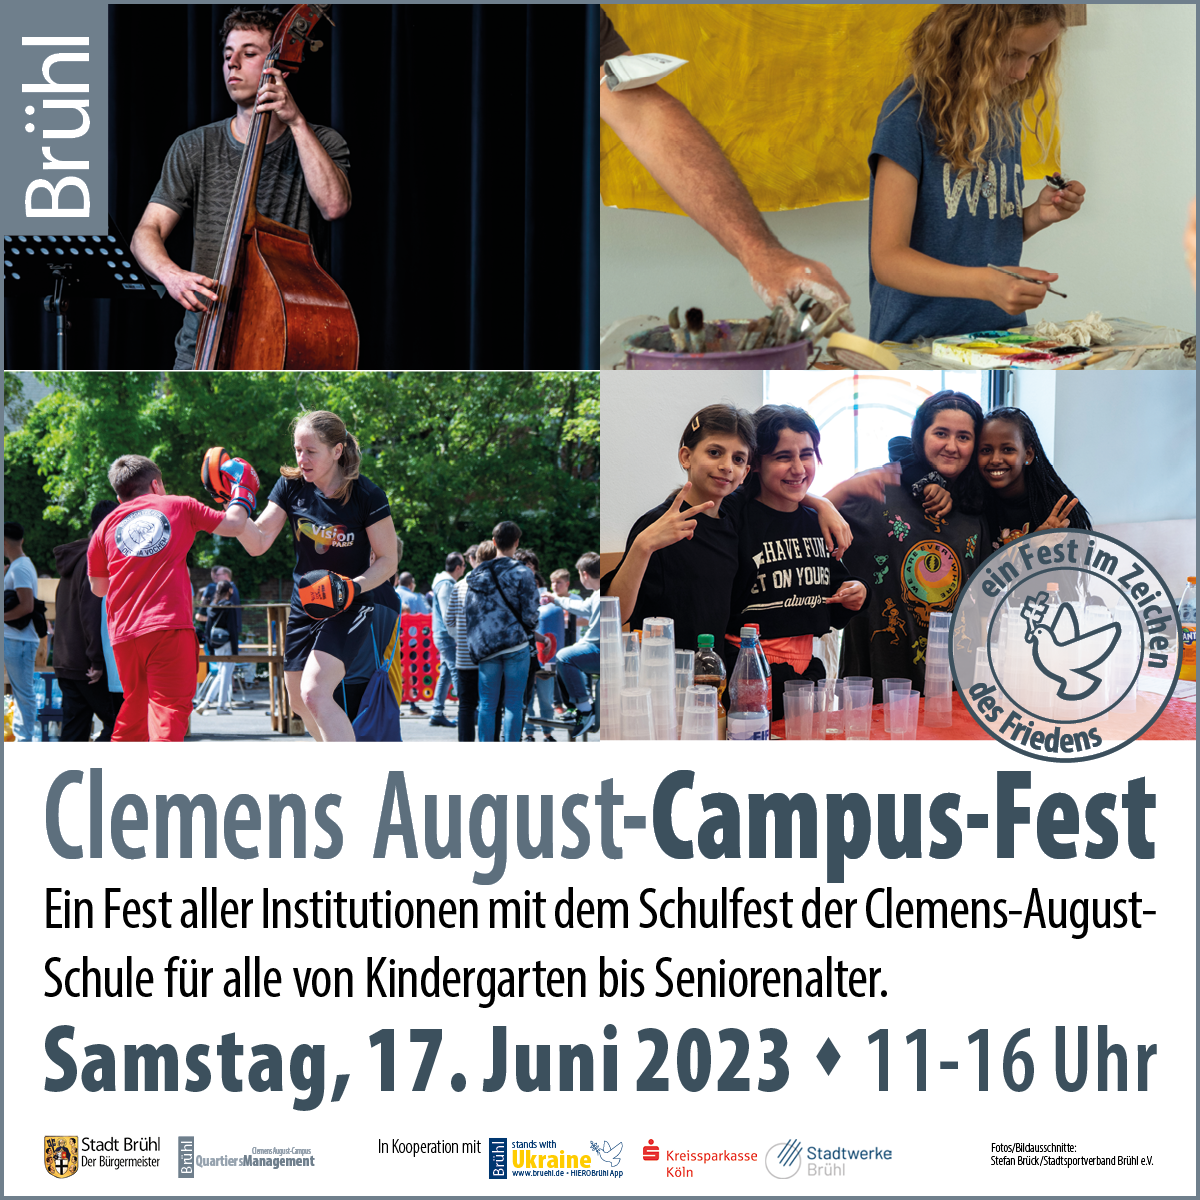 Clemens August Campus-Fest 170623 FB Anzeige